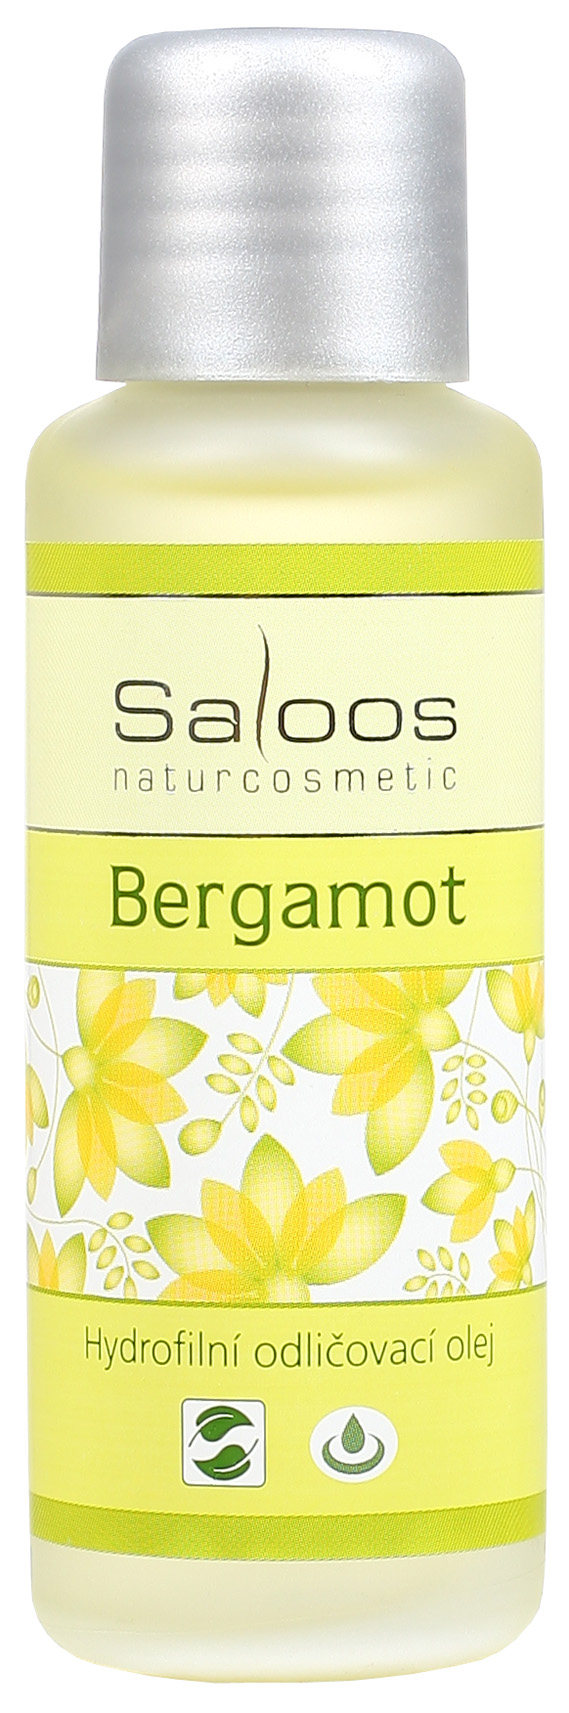 Bergamot - hydrofilný odličovací olej 50